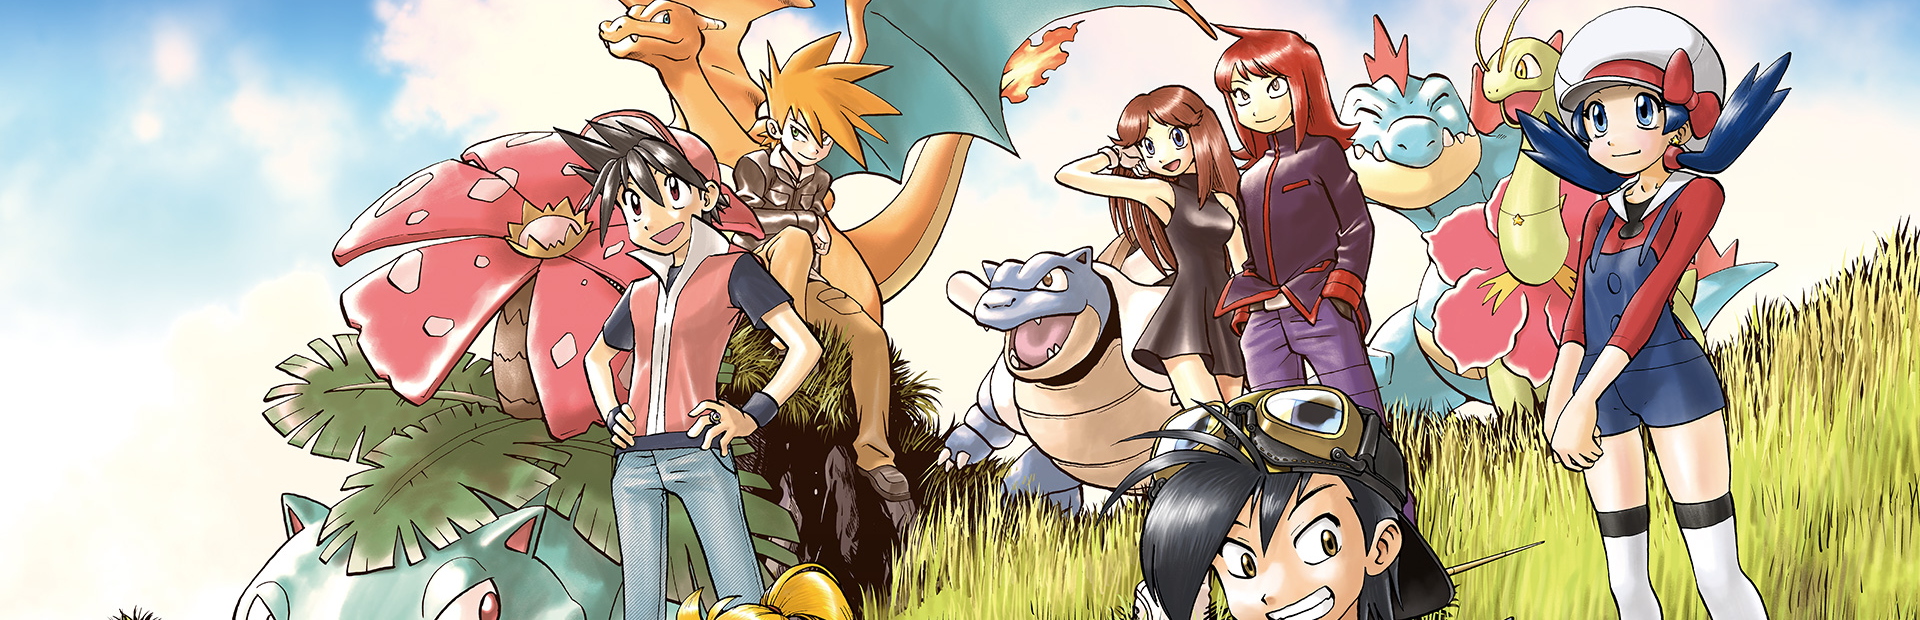 Green (Adventures) - Bulbapedia, the community-driven Pokémon encyclopedia